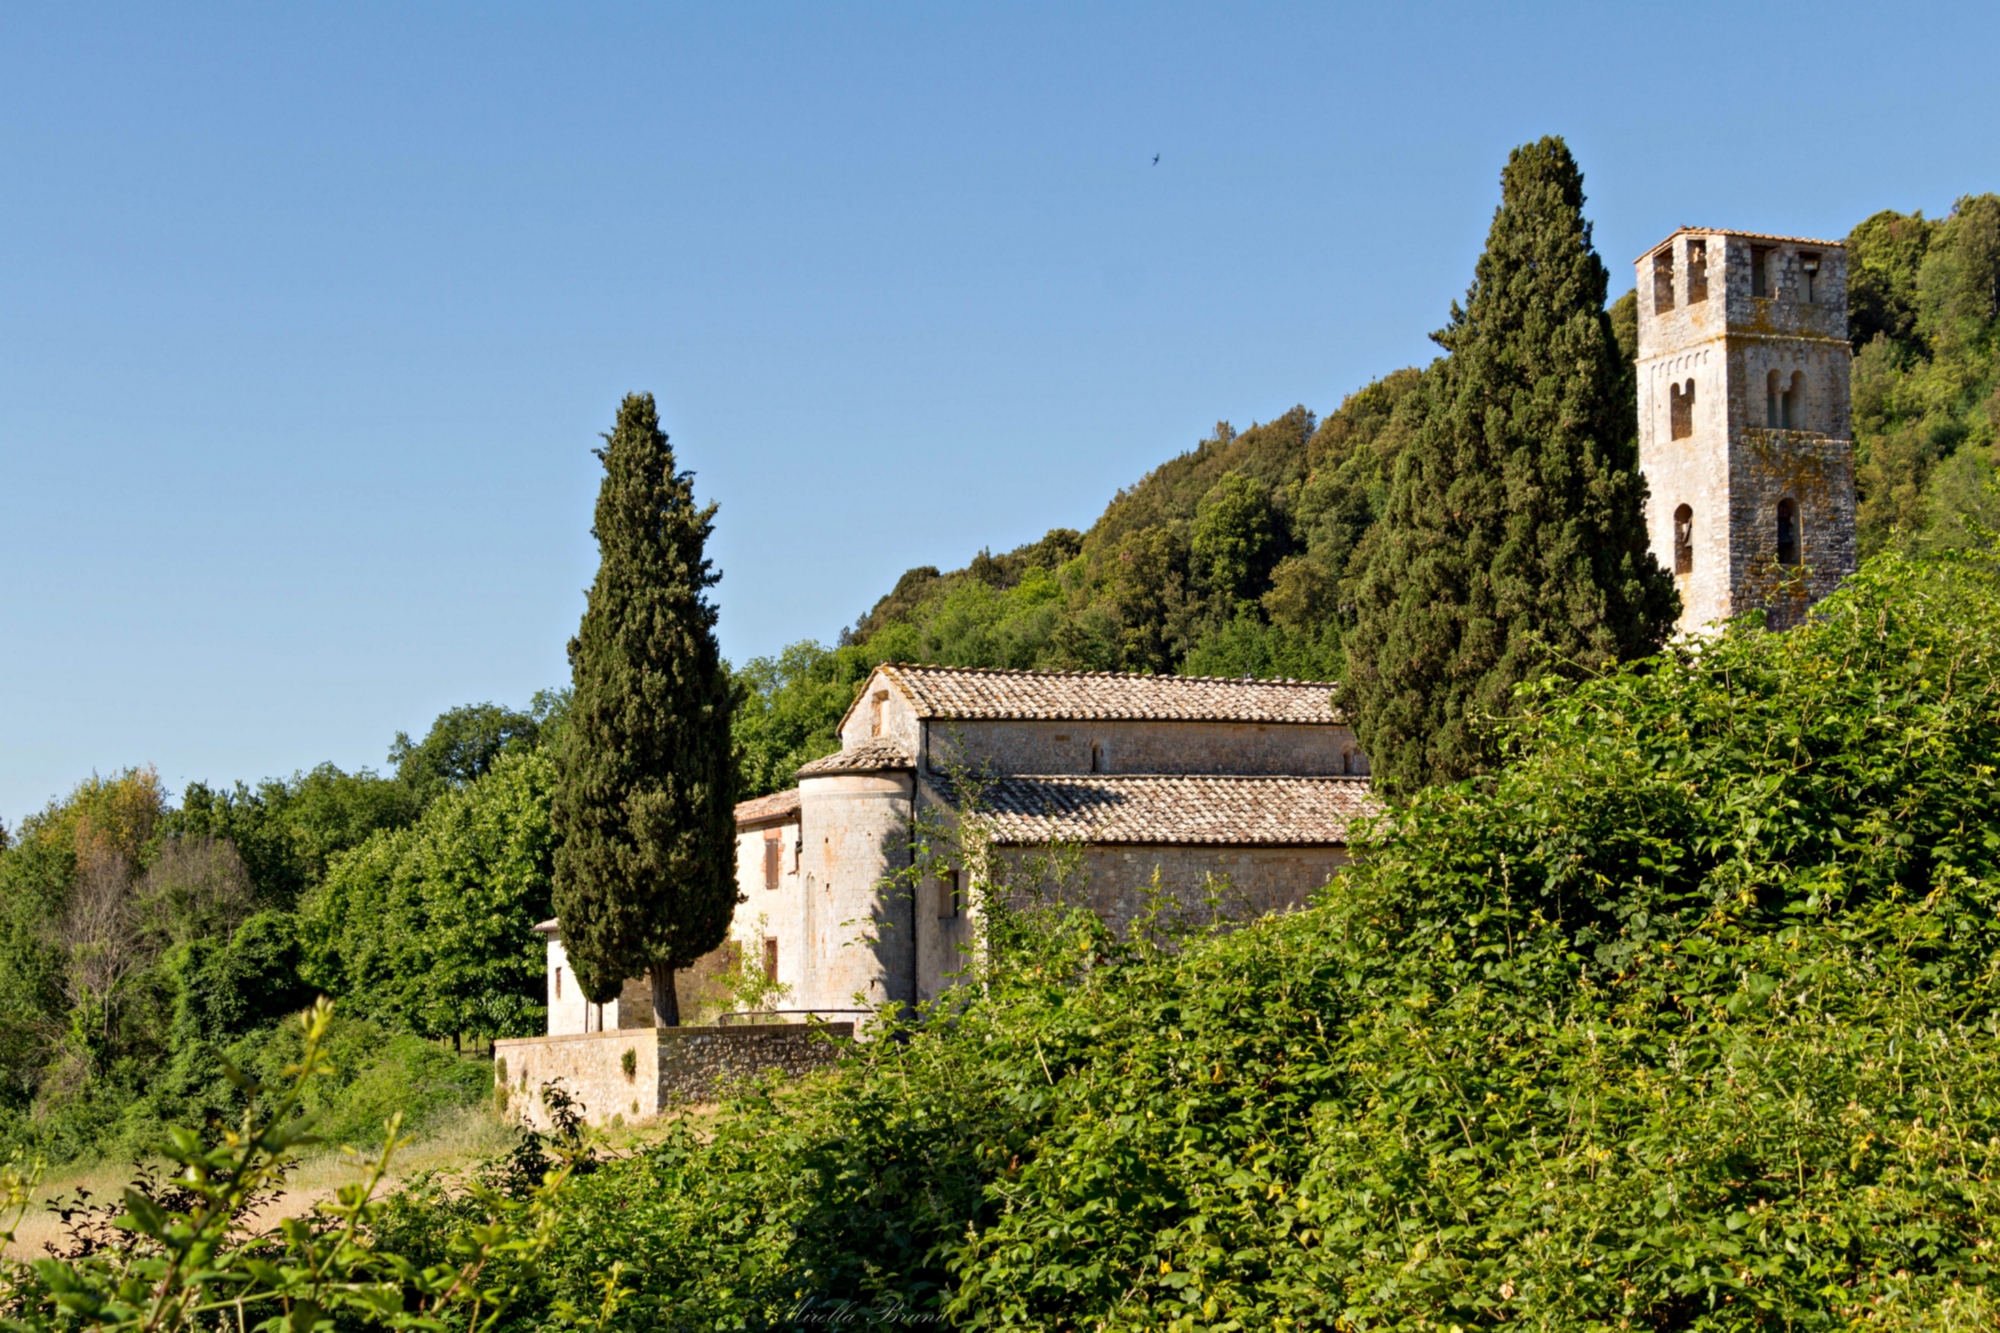 Pieve di San Giovanni Battista in Sovicille